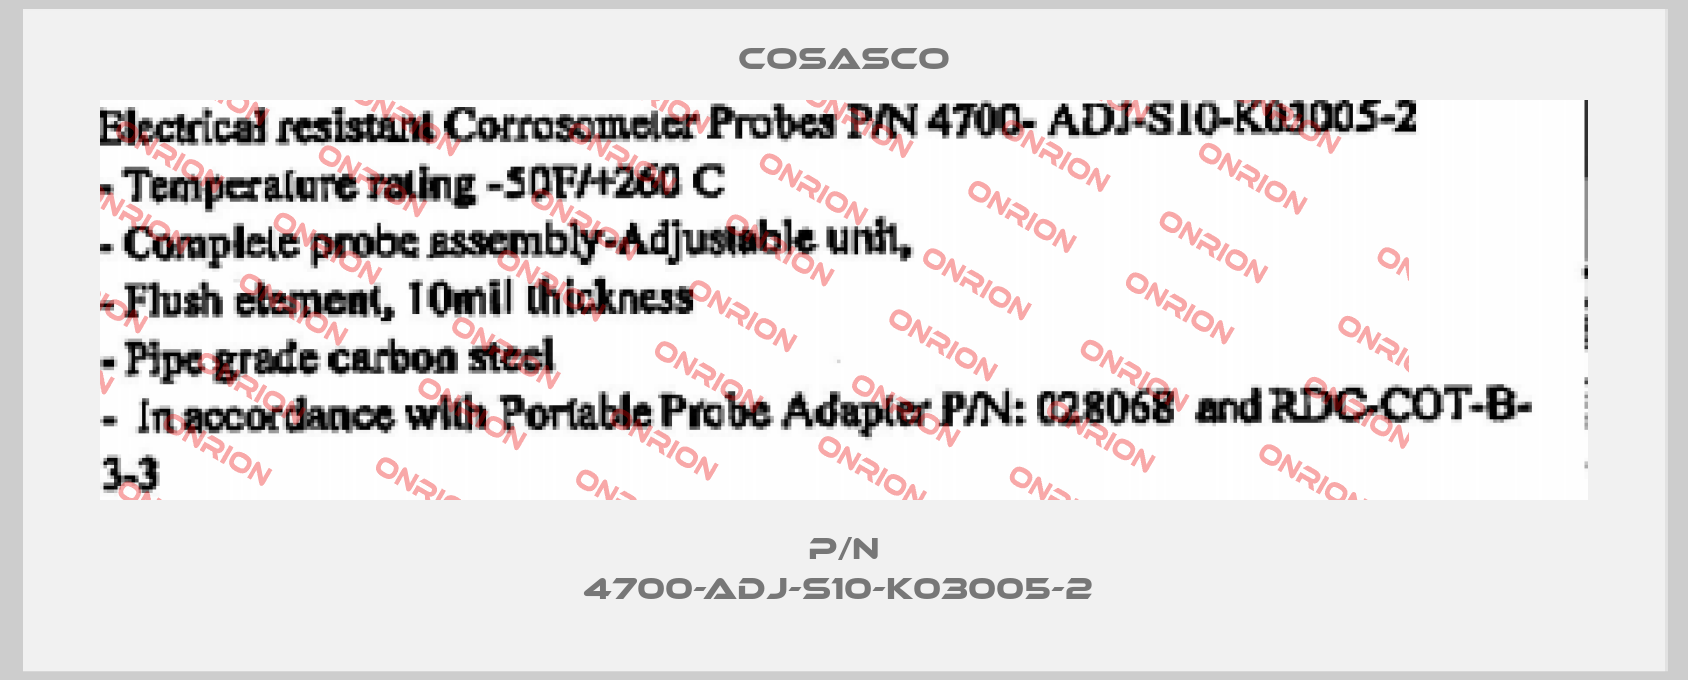 P/N 4700-ADJ-S10-K03005-2 -big